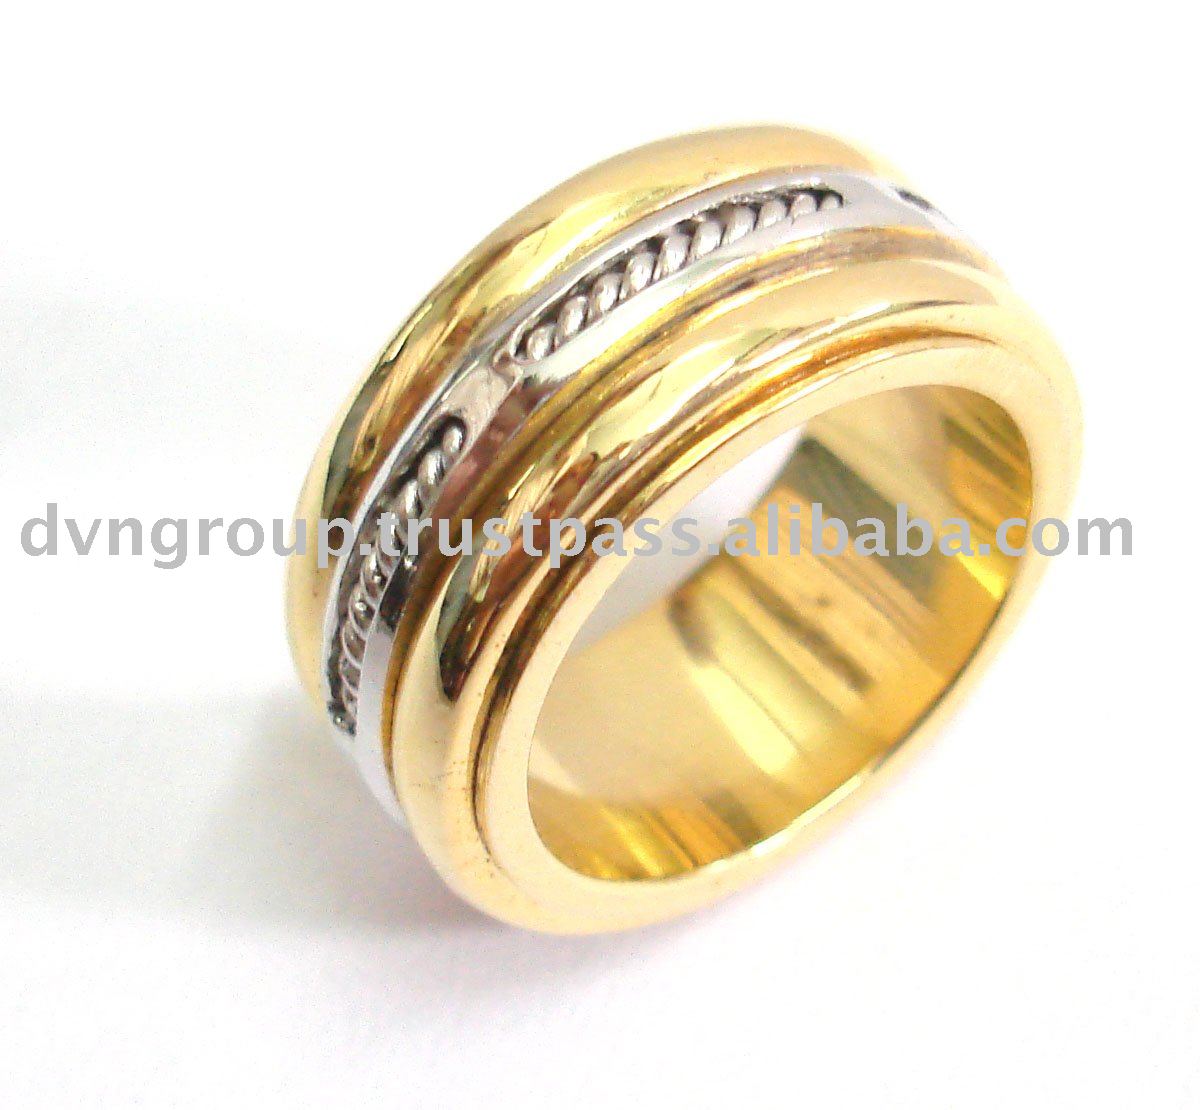      24 , Italian gold rings 2014